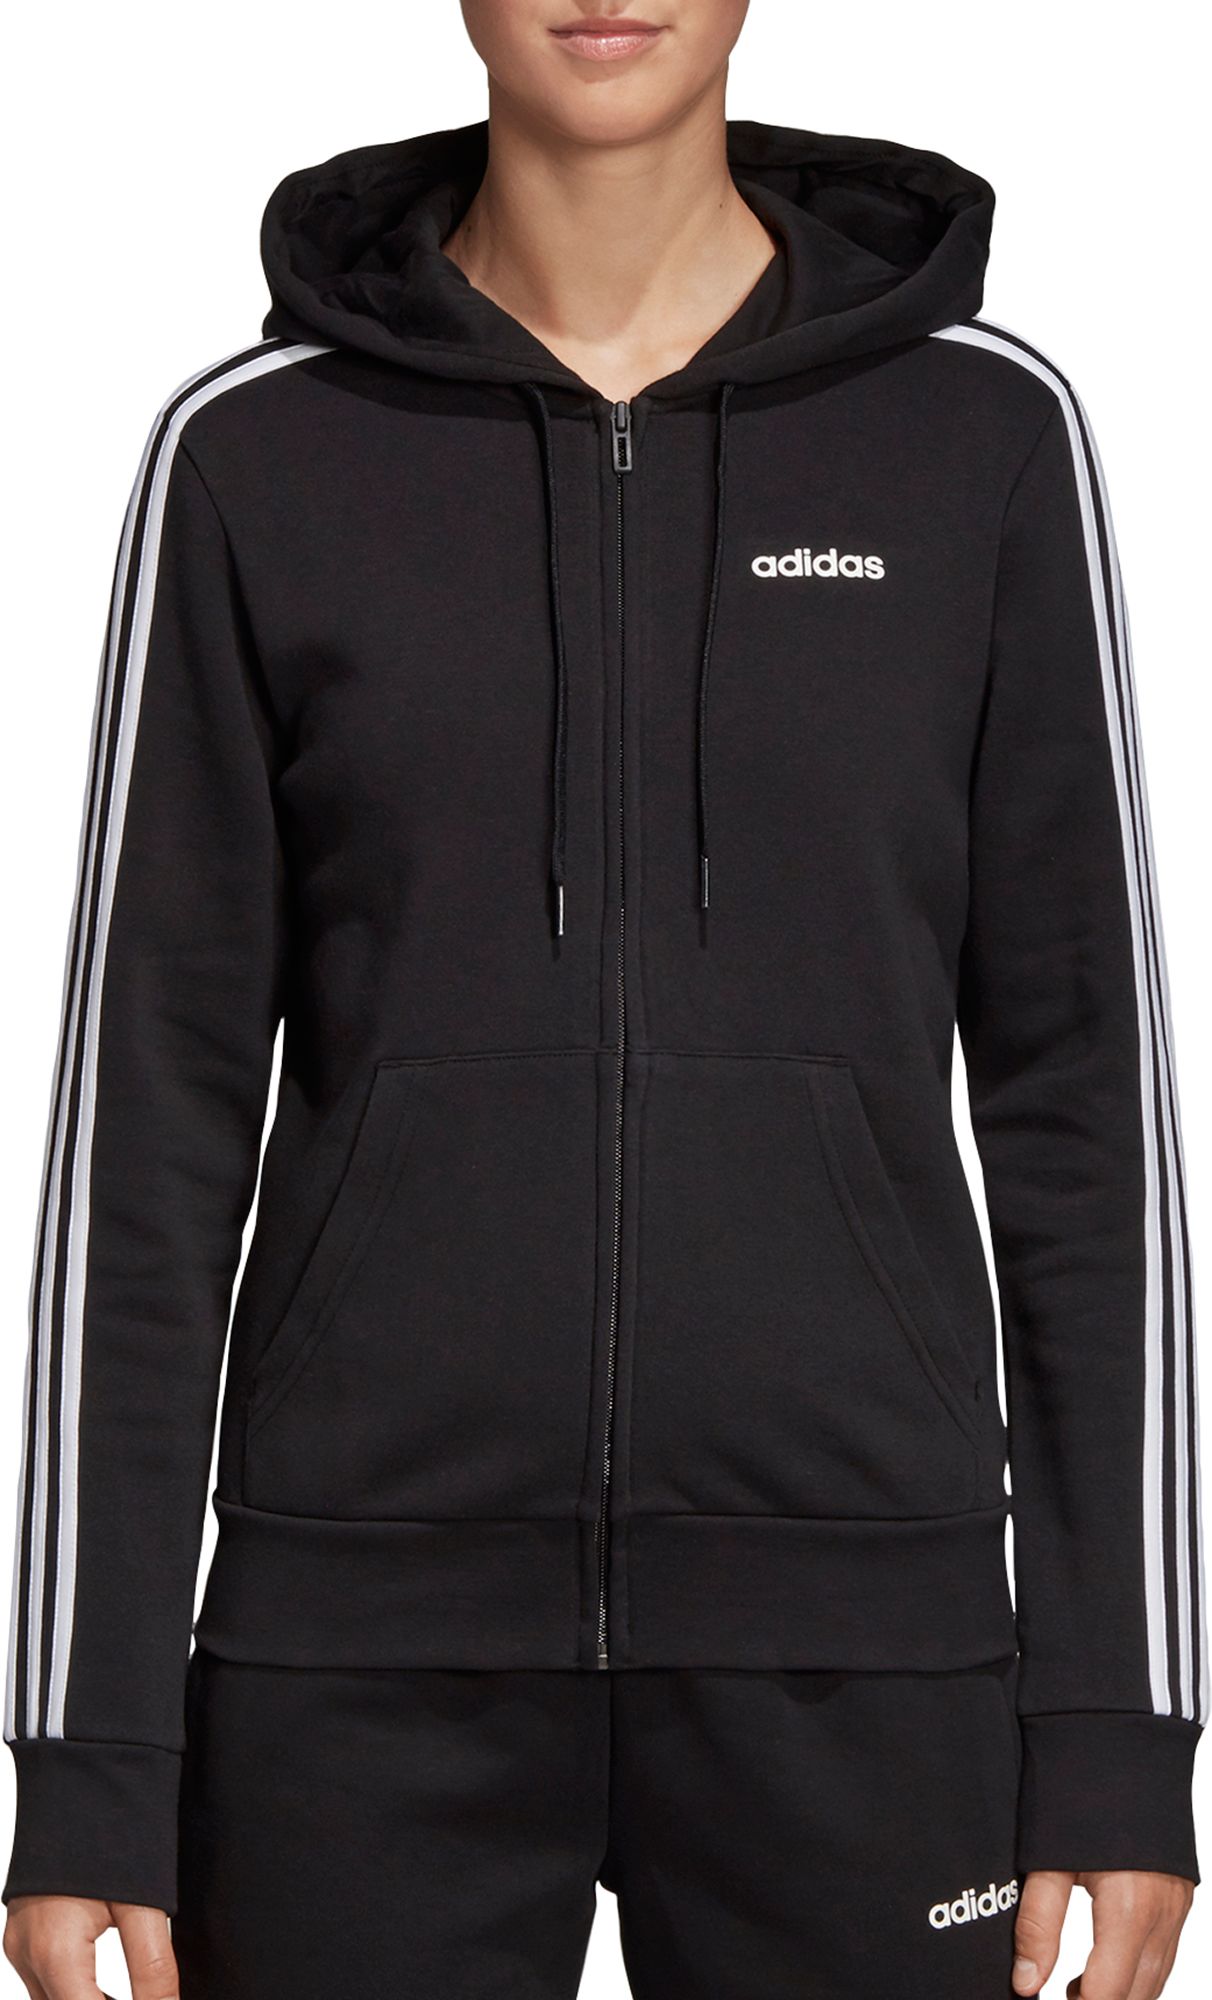 adidas 3 stripes full zip hoodie